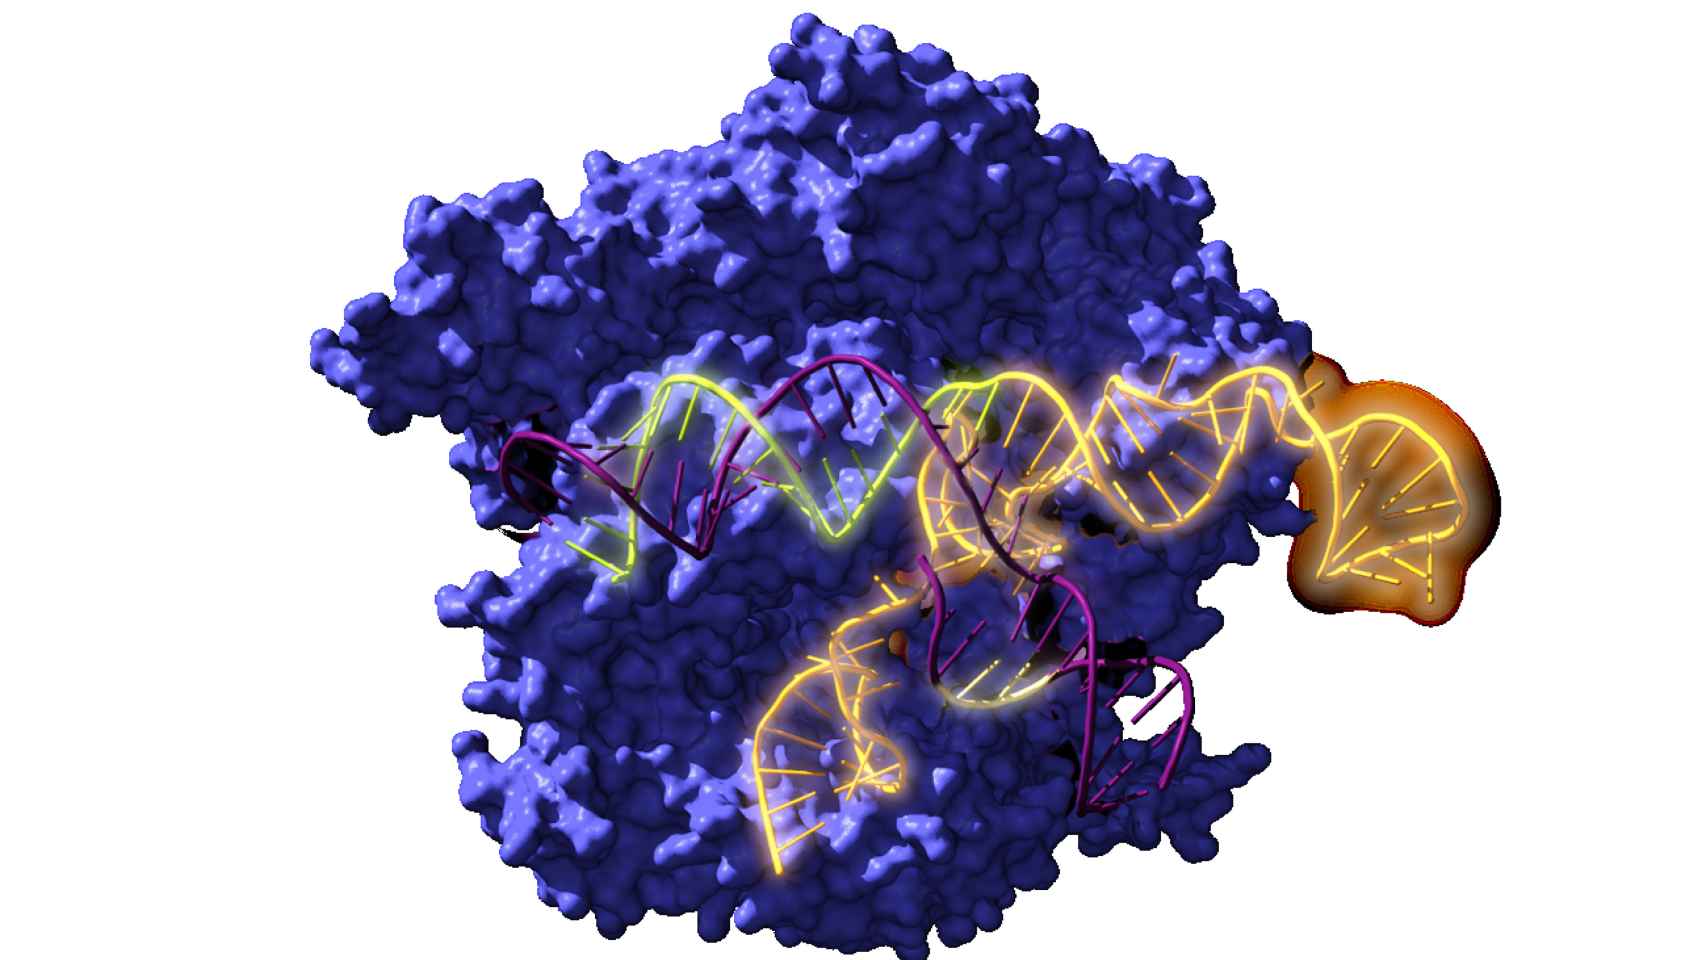 Reconstrucción de la Cas9, la enzima endonucleasa utilizada en el sistema CRISPR